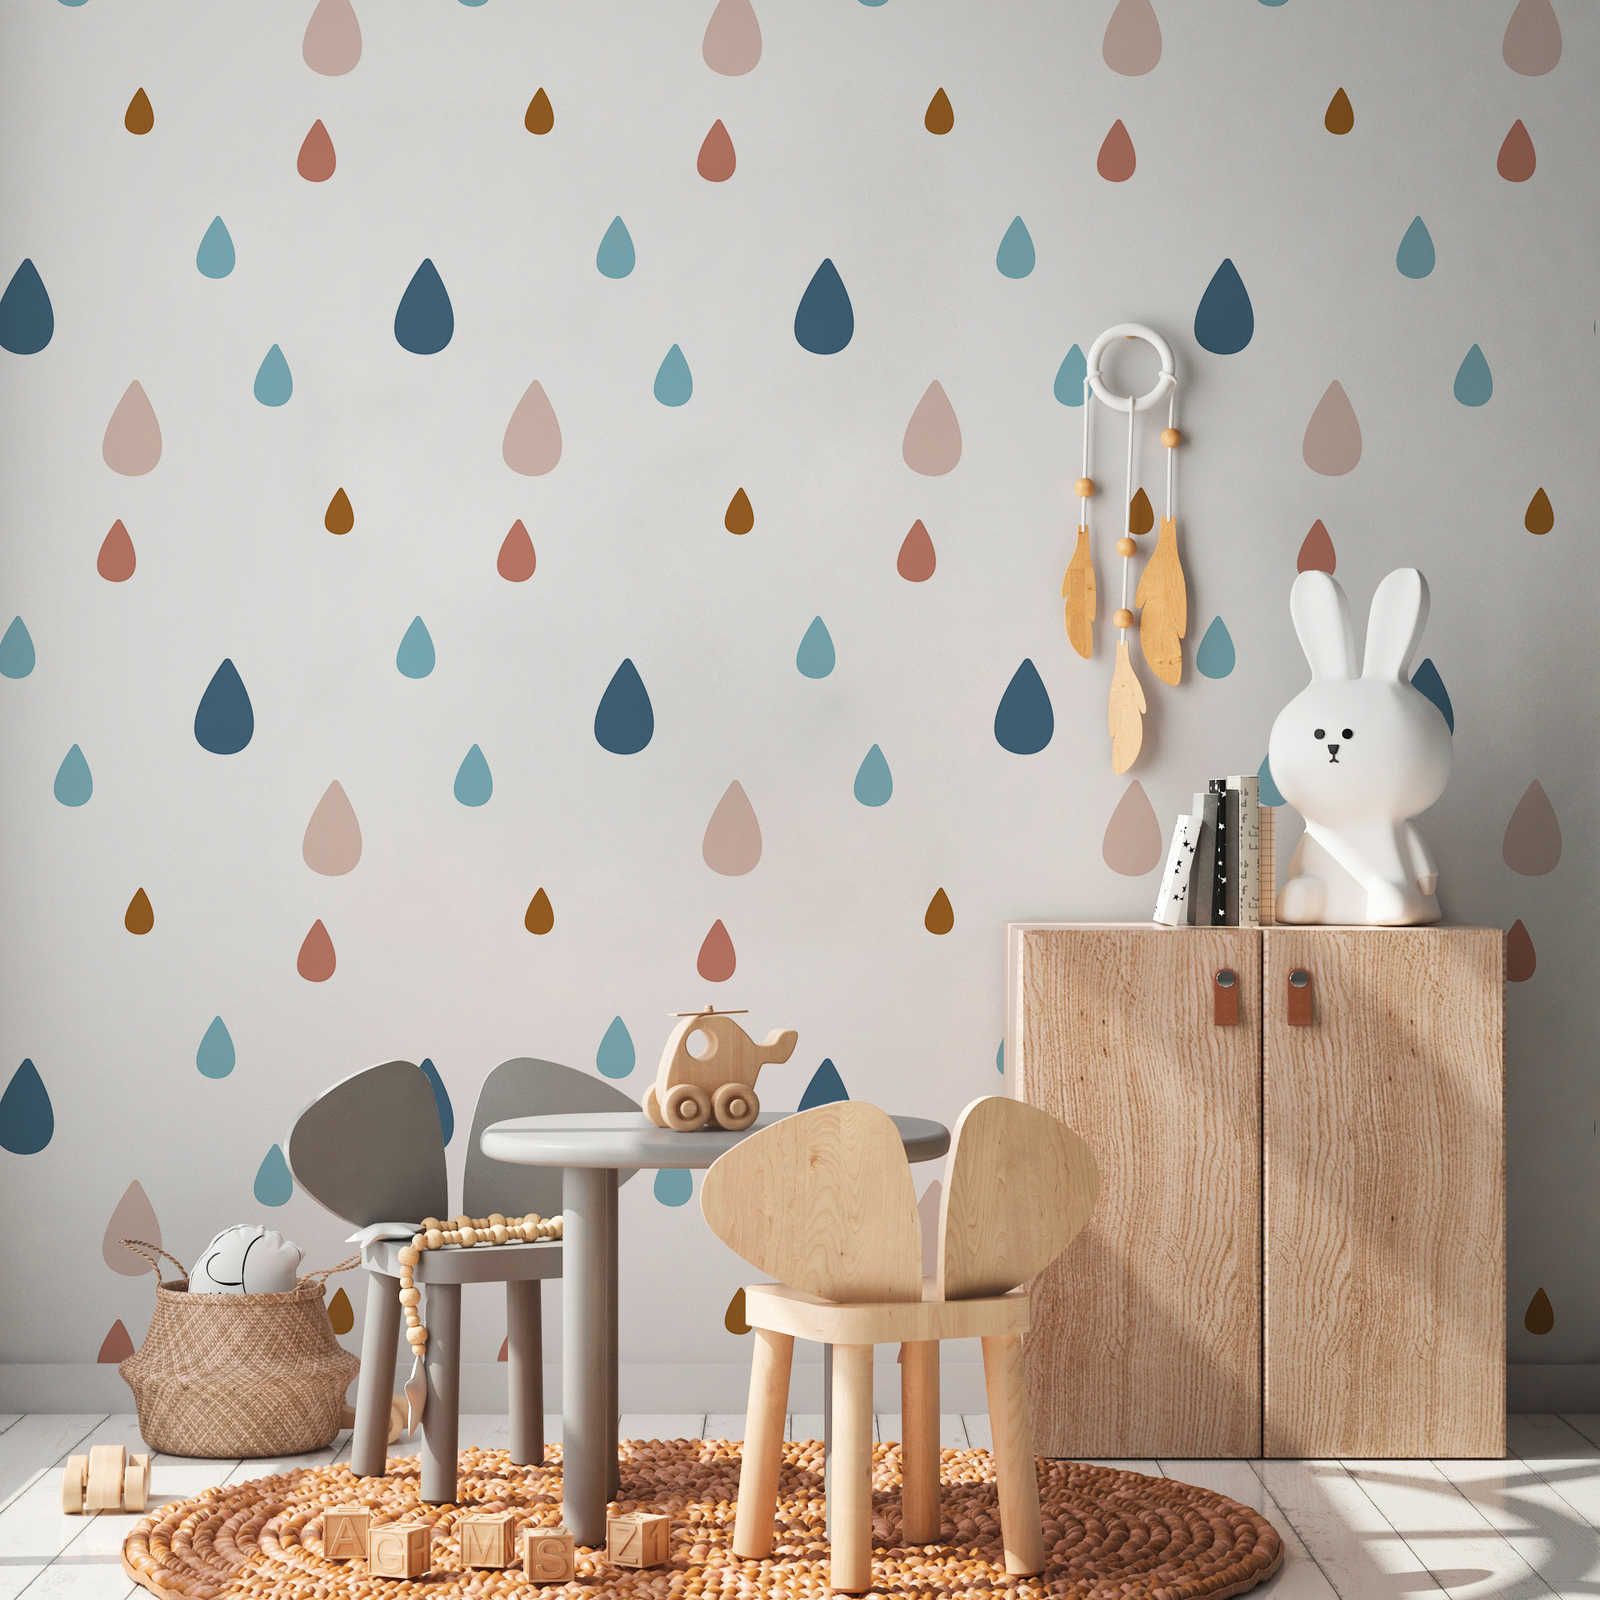         Fototapete fürs Kinderzimmer mit bunten Wassertropfen – Glattes & leicht glänzendes Vlies
    